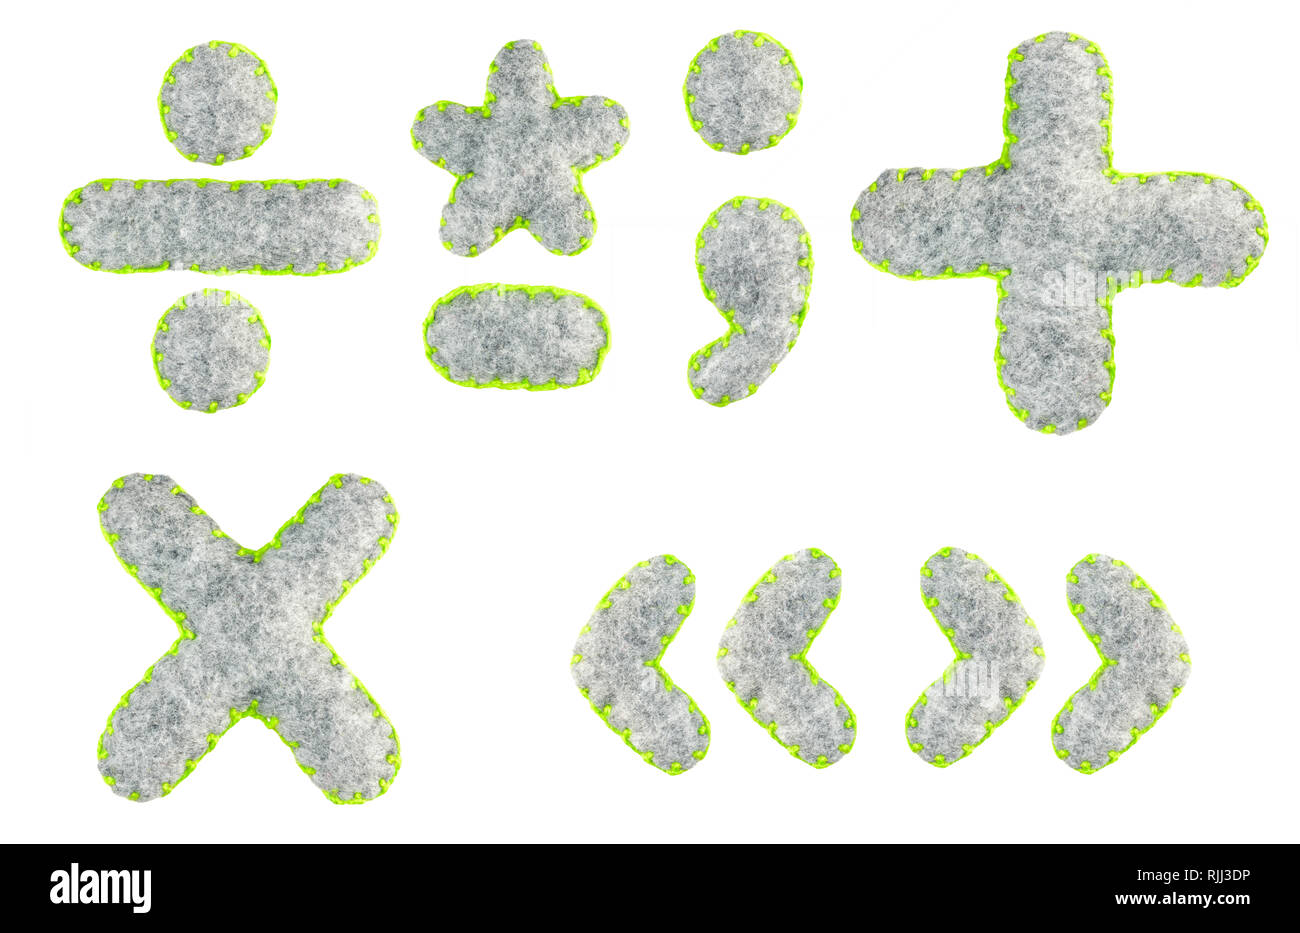 Symbole Plus, Minus, Multiplikation, Division, Zitate, Punkt, Komma, Bindestrich, Doppelpunkt, Sternchen der grauem Filz Alphabet isoliert auf einem weißen backgroun Stockfoto